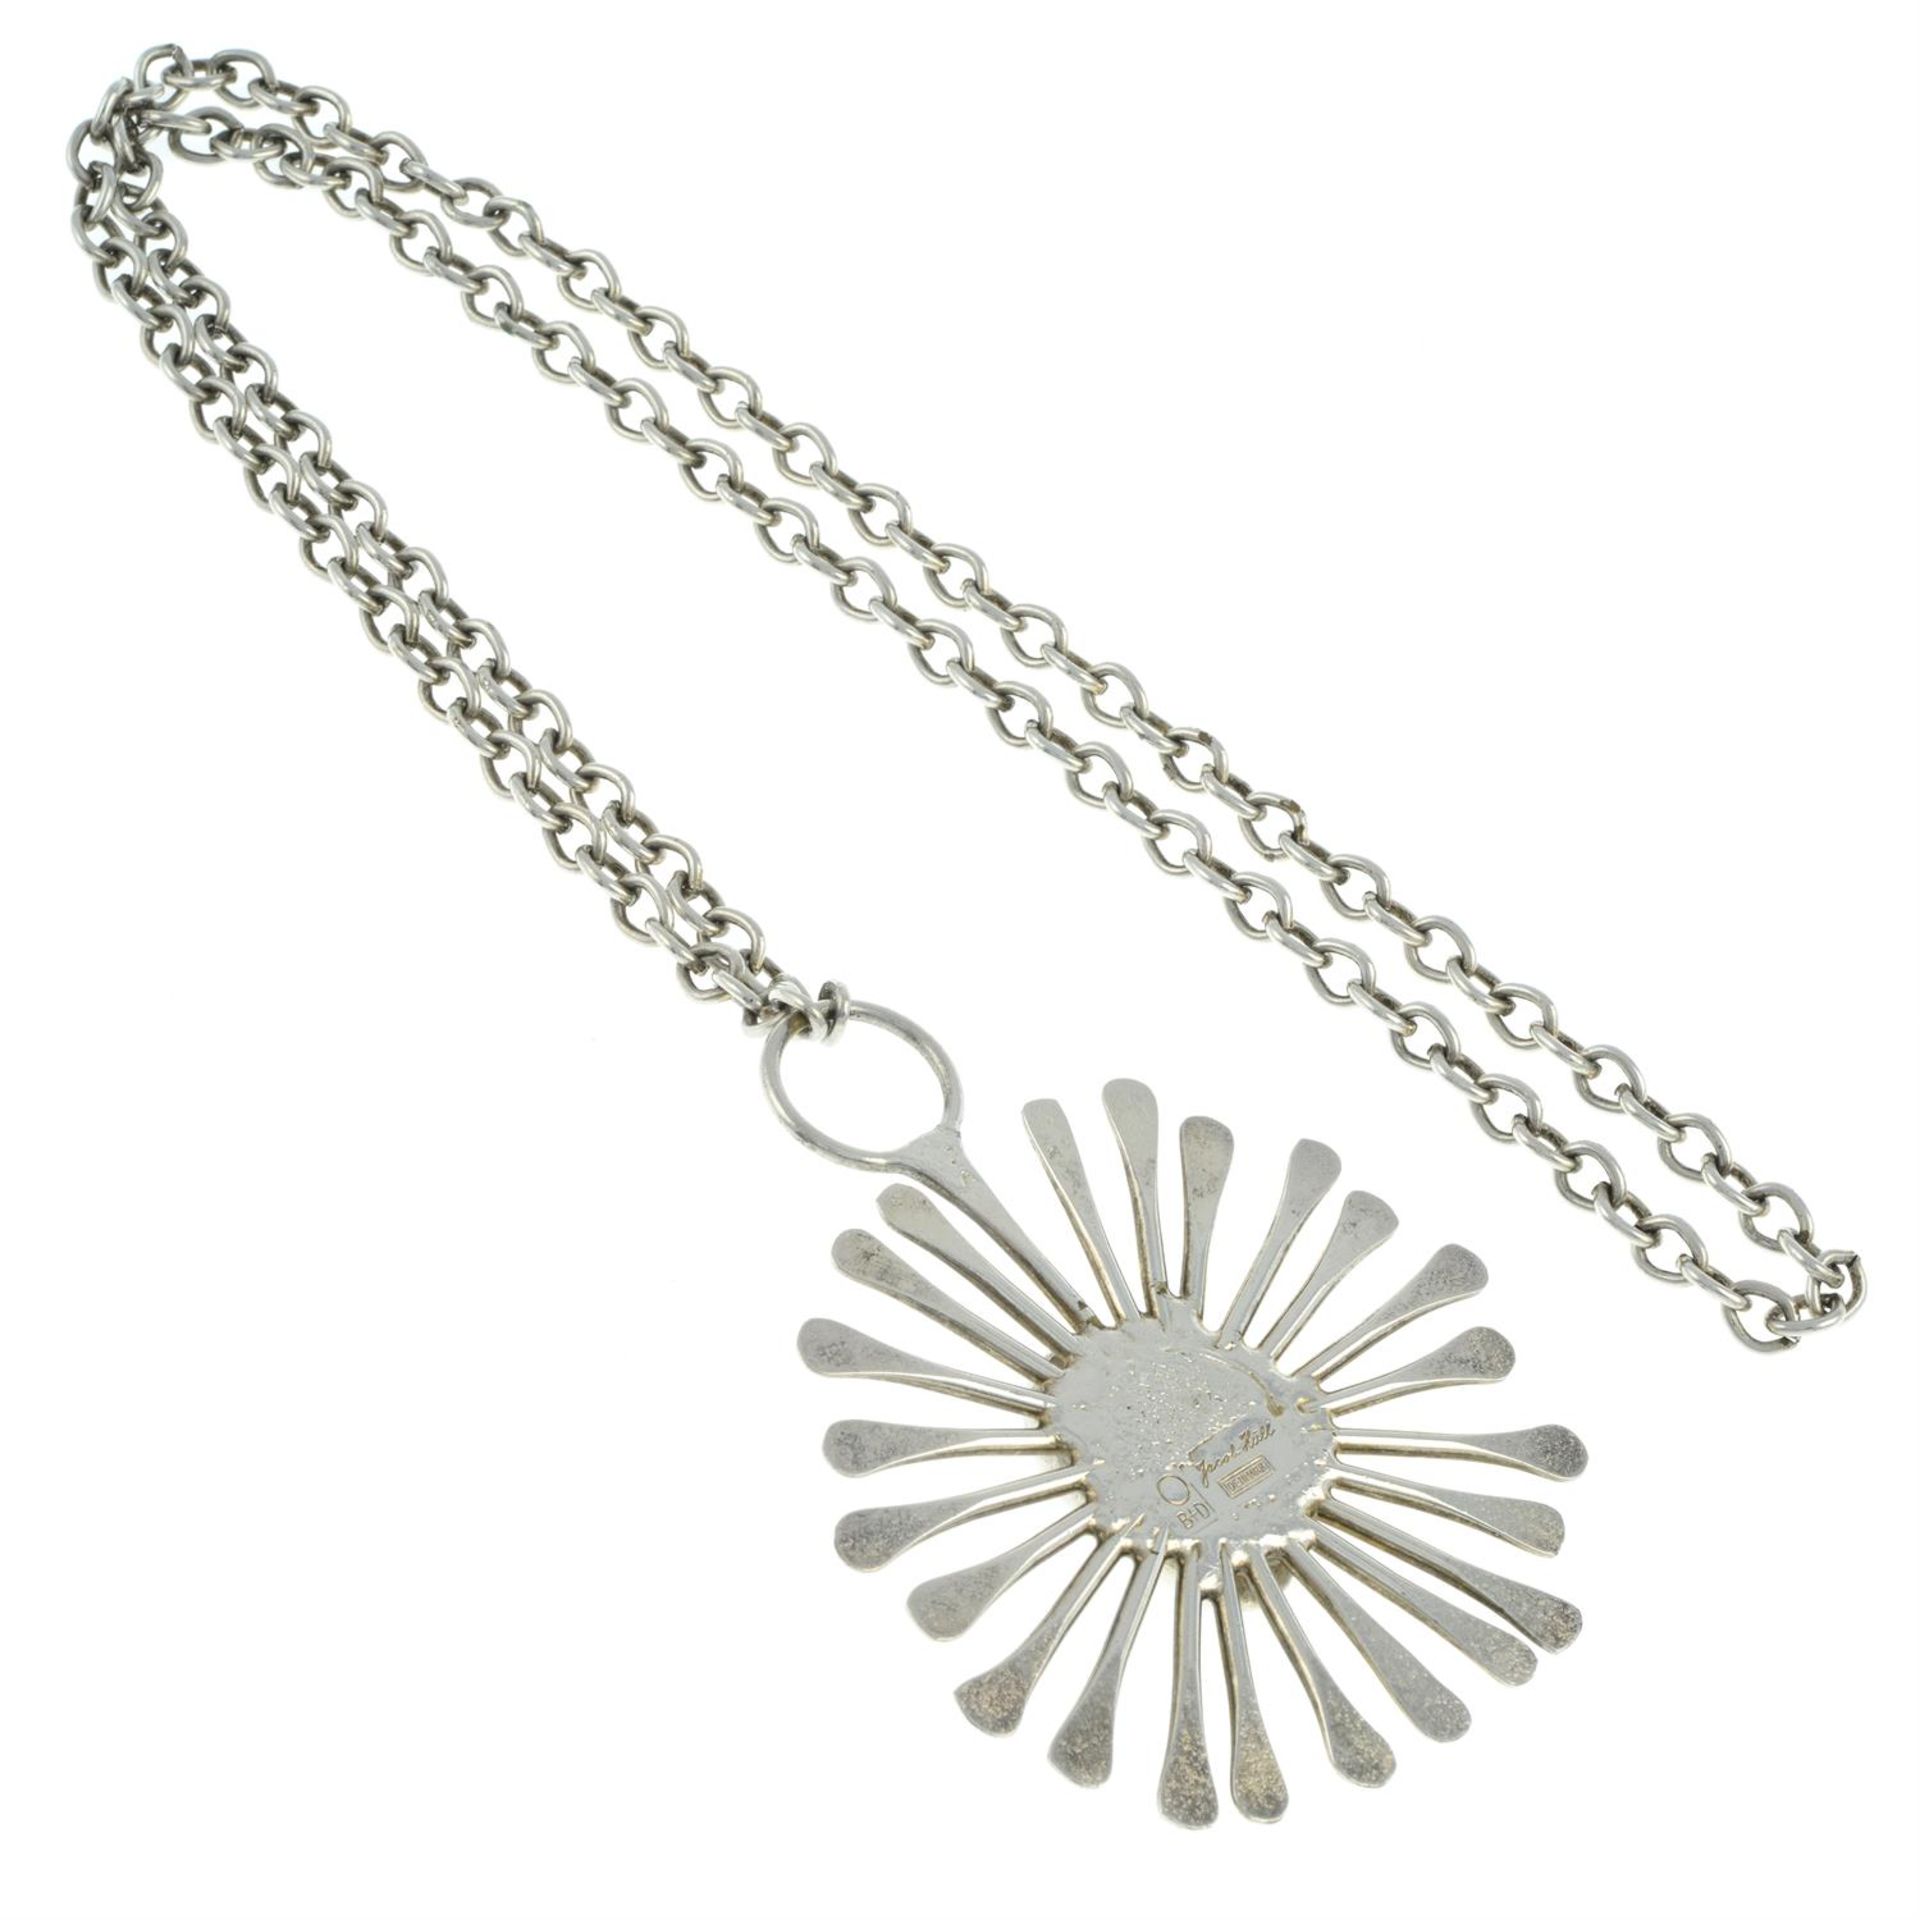 'Starburst' necklace, Buch & Deichmann - Image 2 of 2